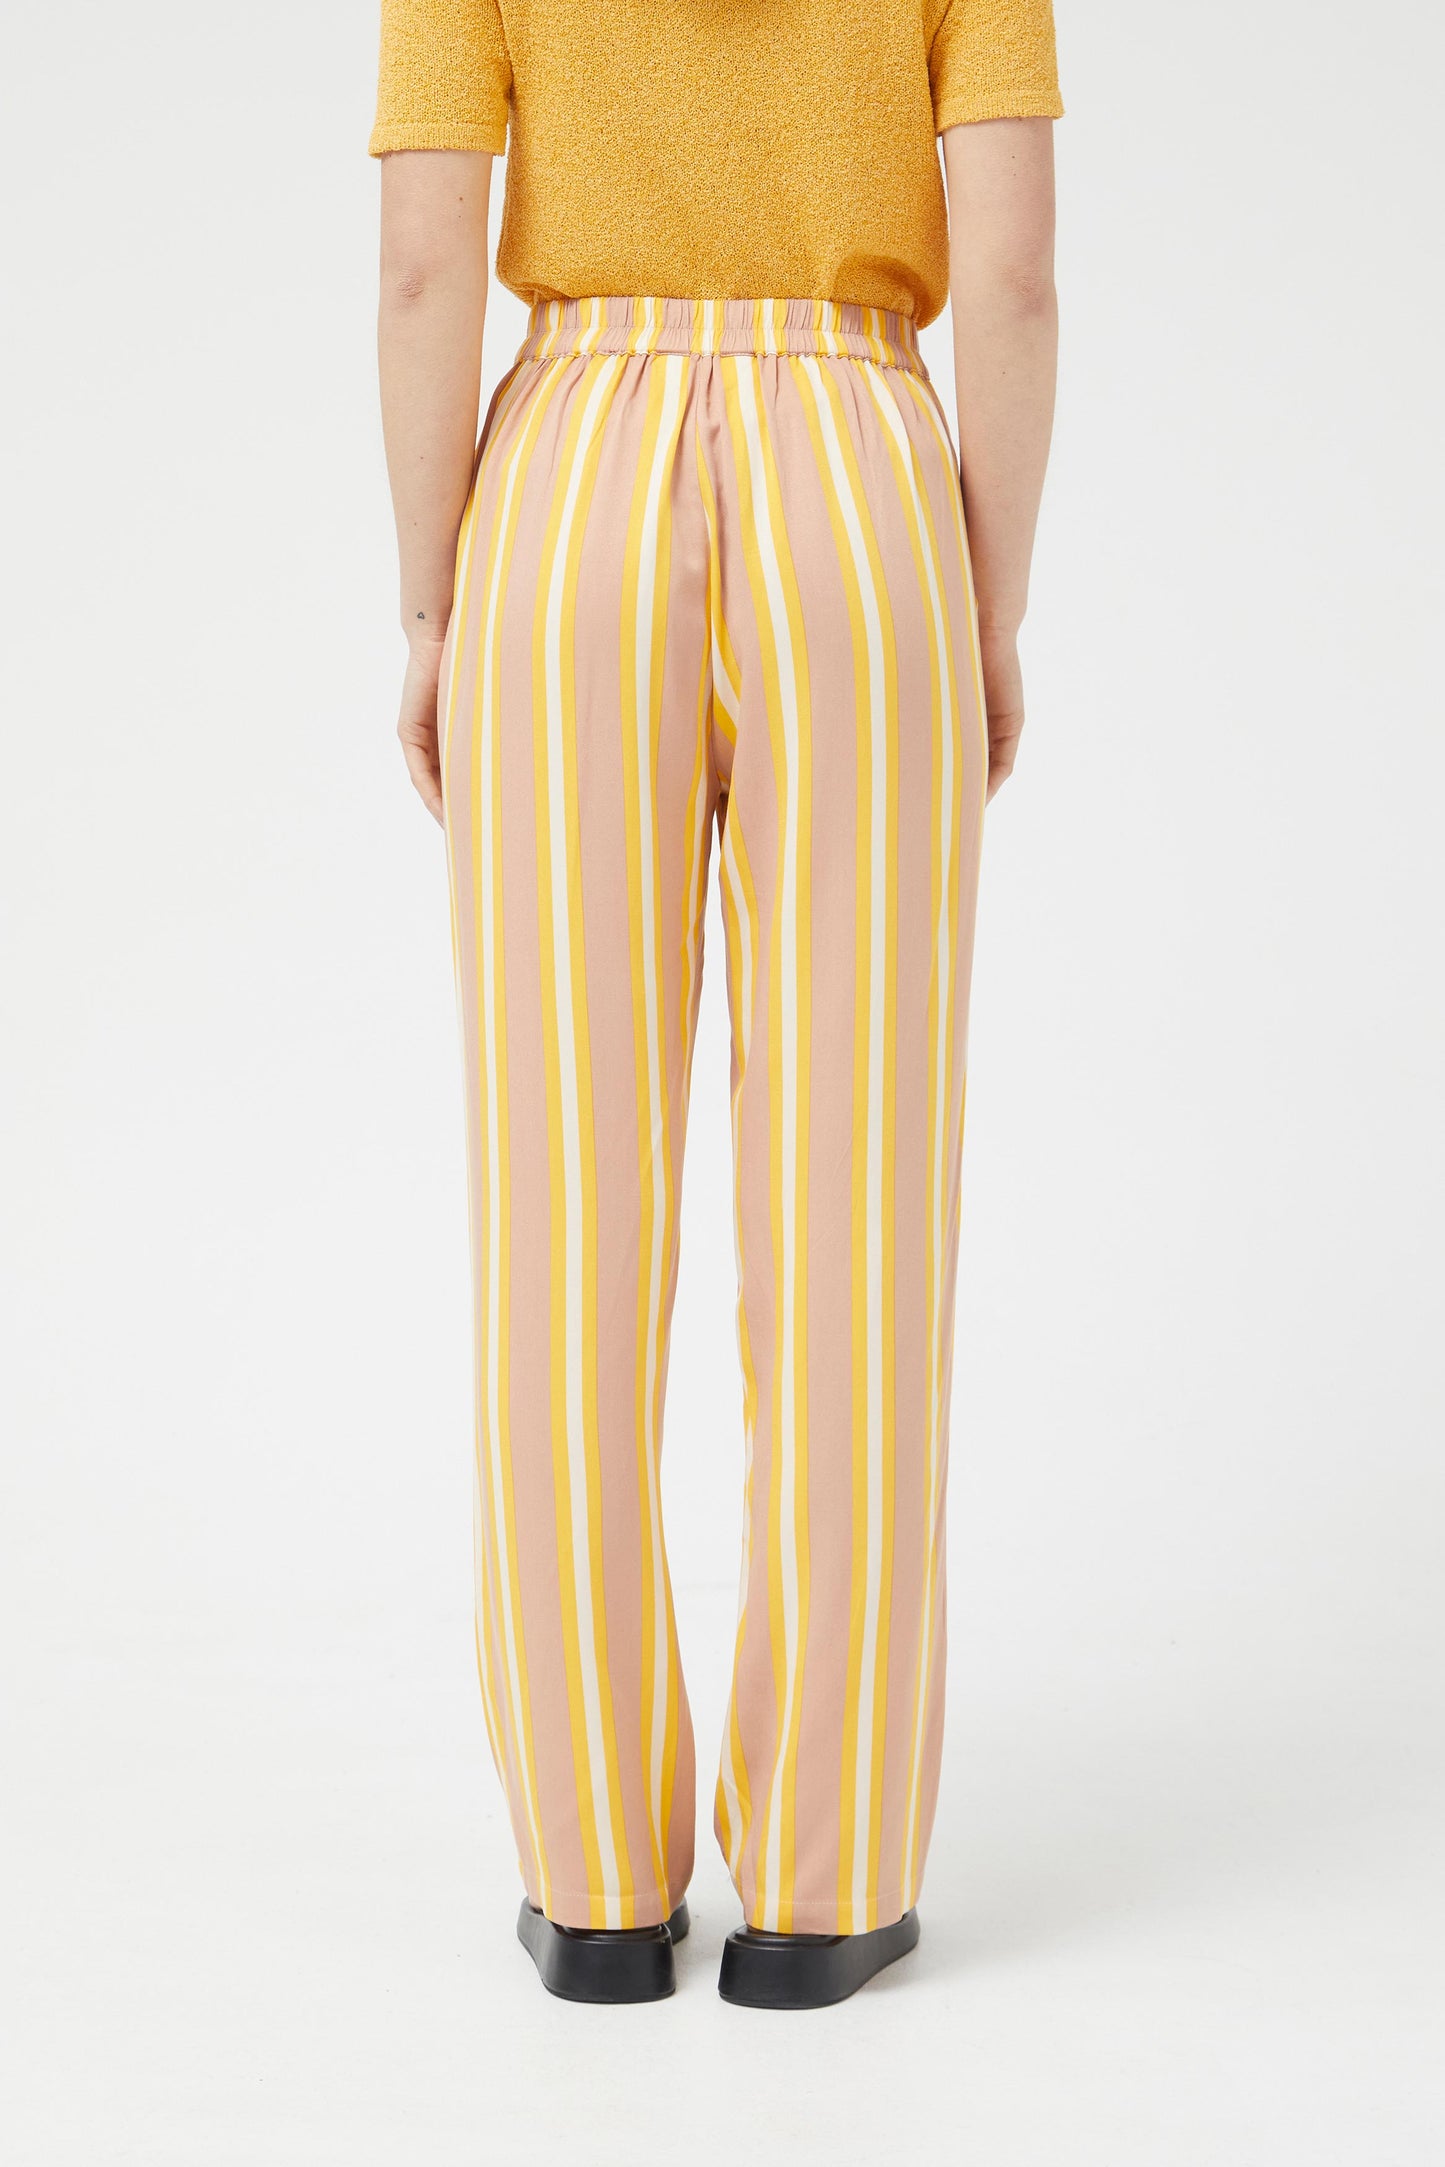 Ariella Striped Pants